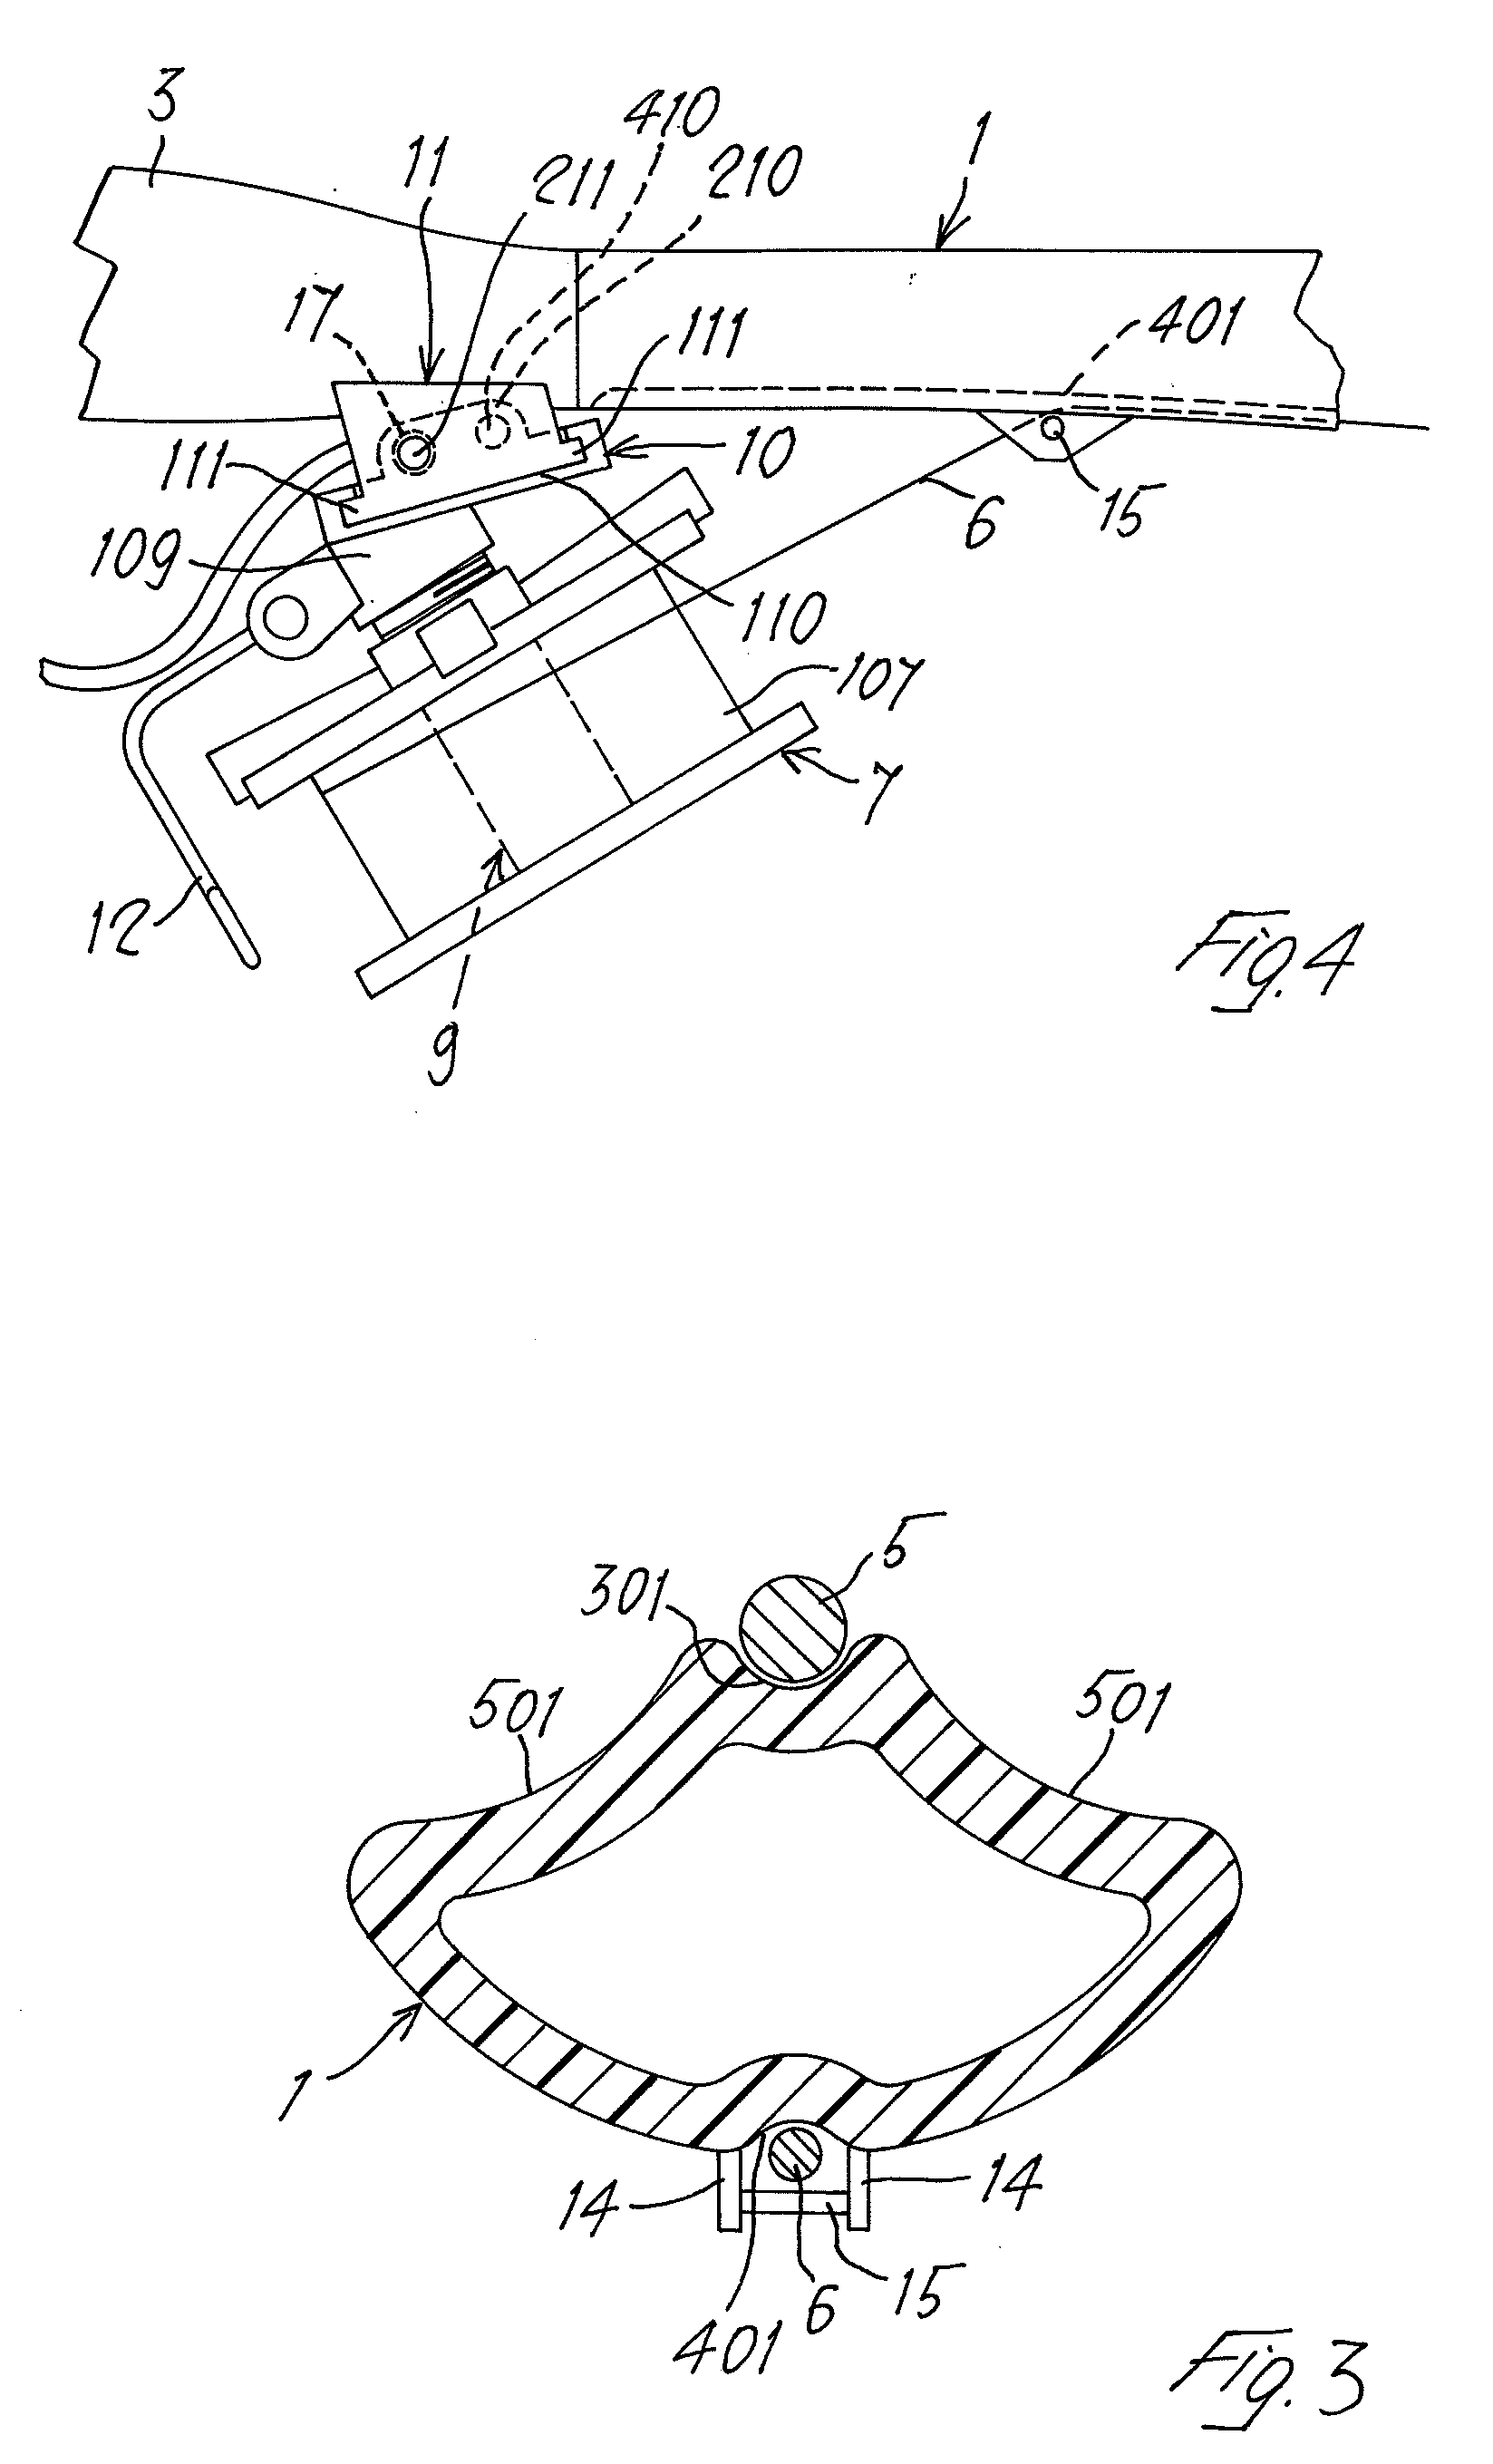 Rubbers-gun for underwater fishing